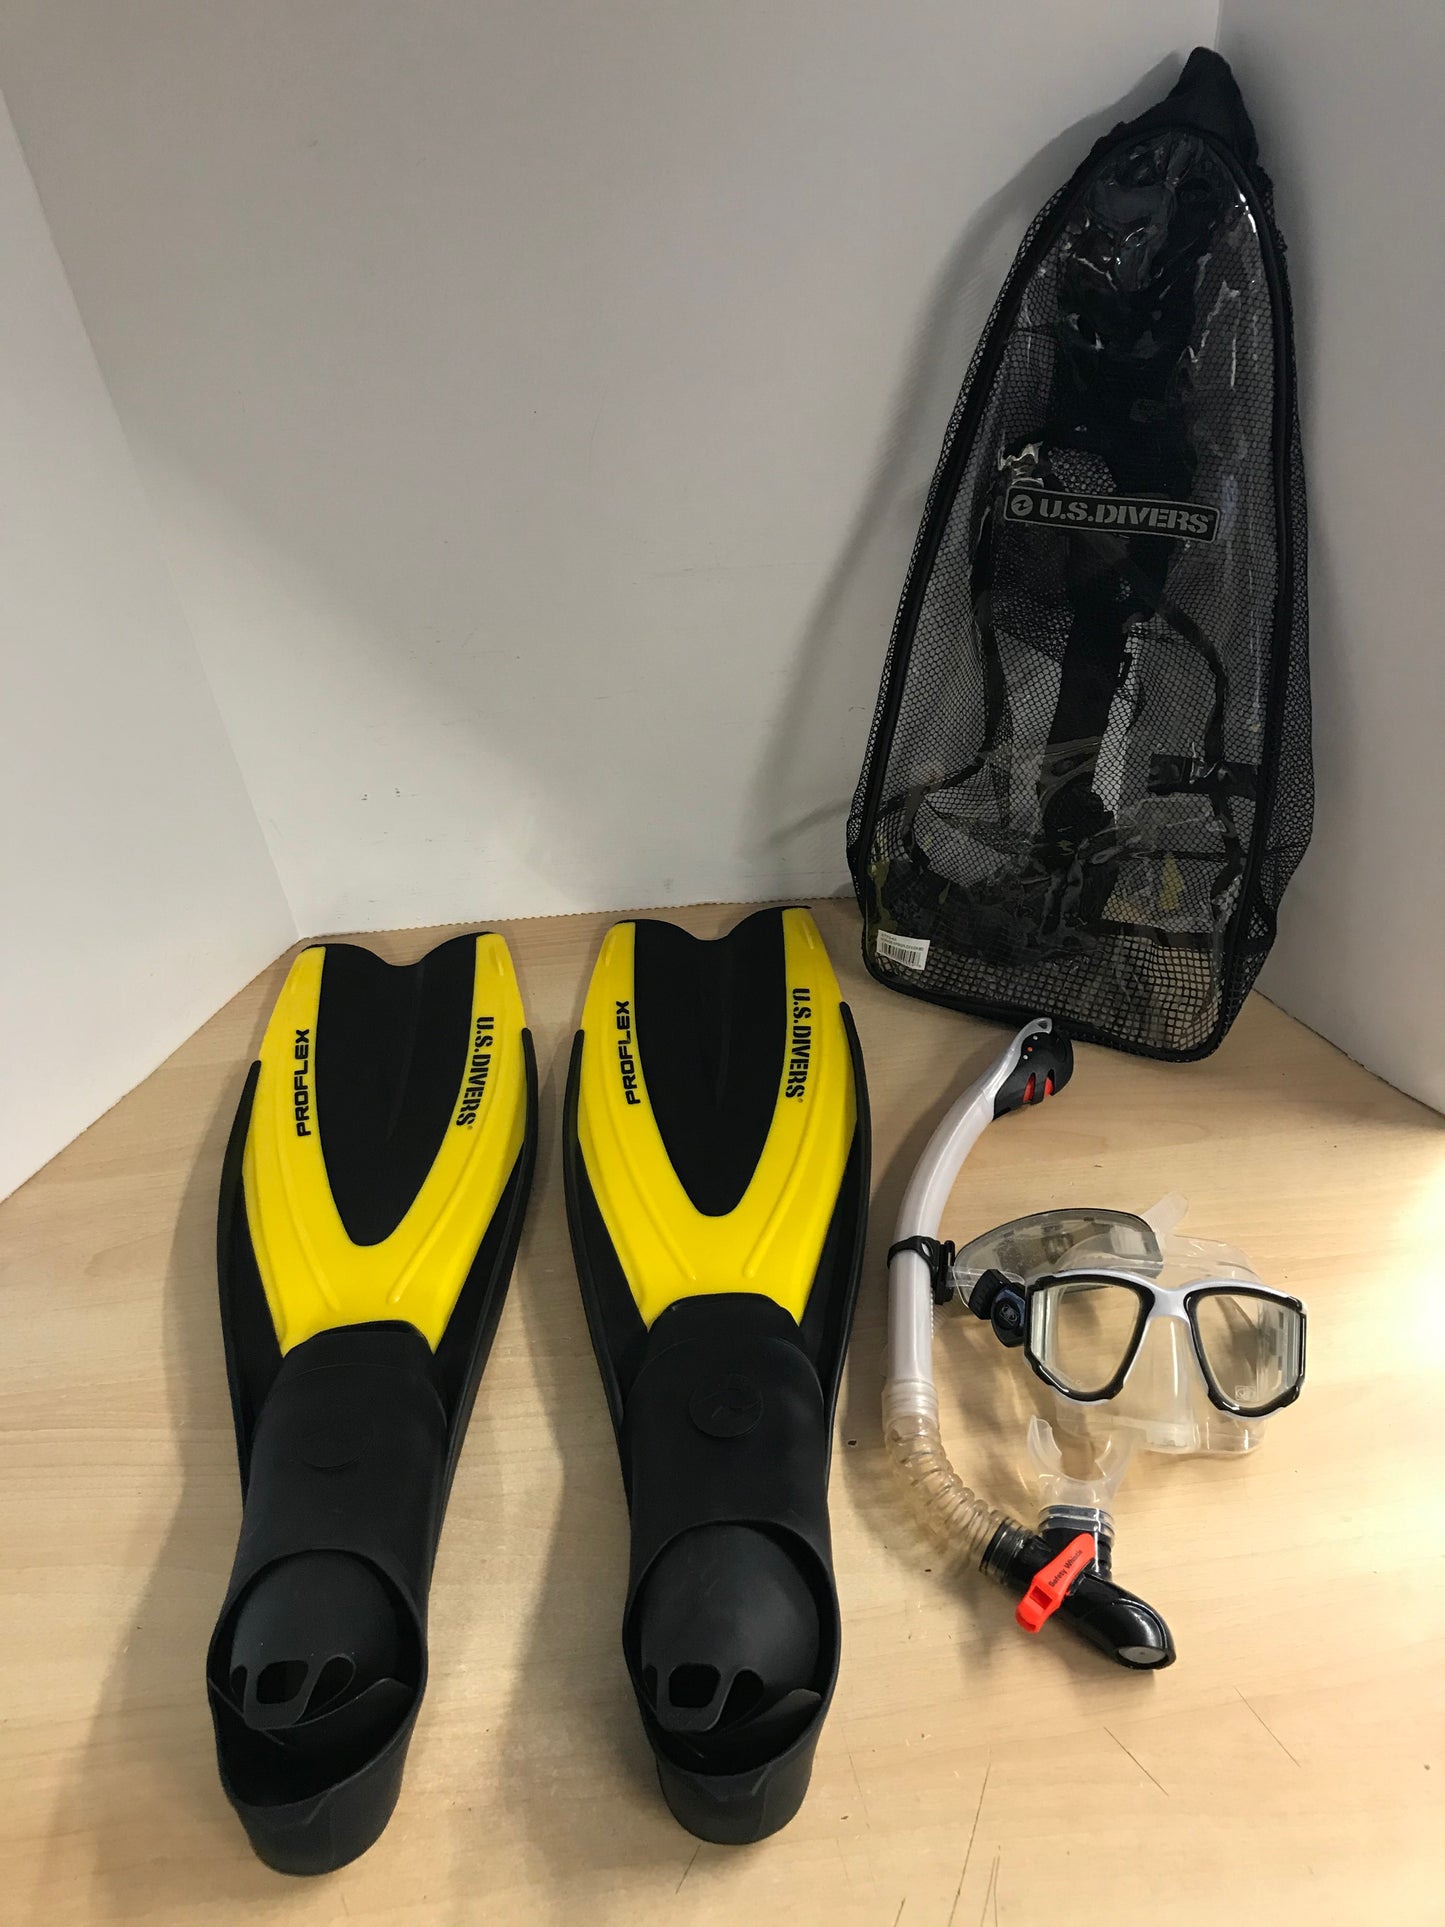 Snorkel Dive Fins Set Men's Shoe Size 11-12 US Divers Pro Flex Yellow Black Grey Excellent As New